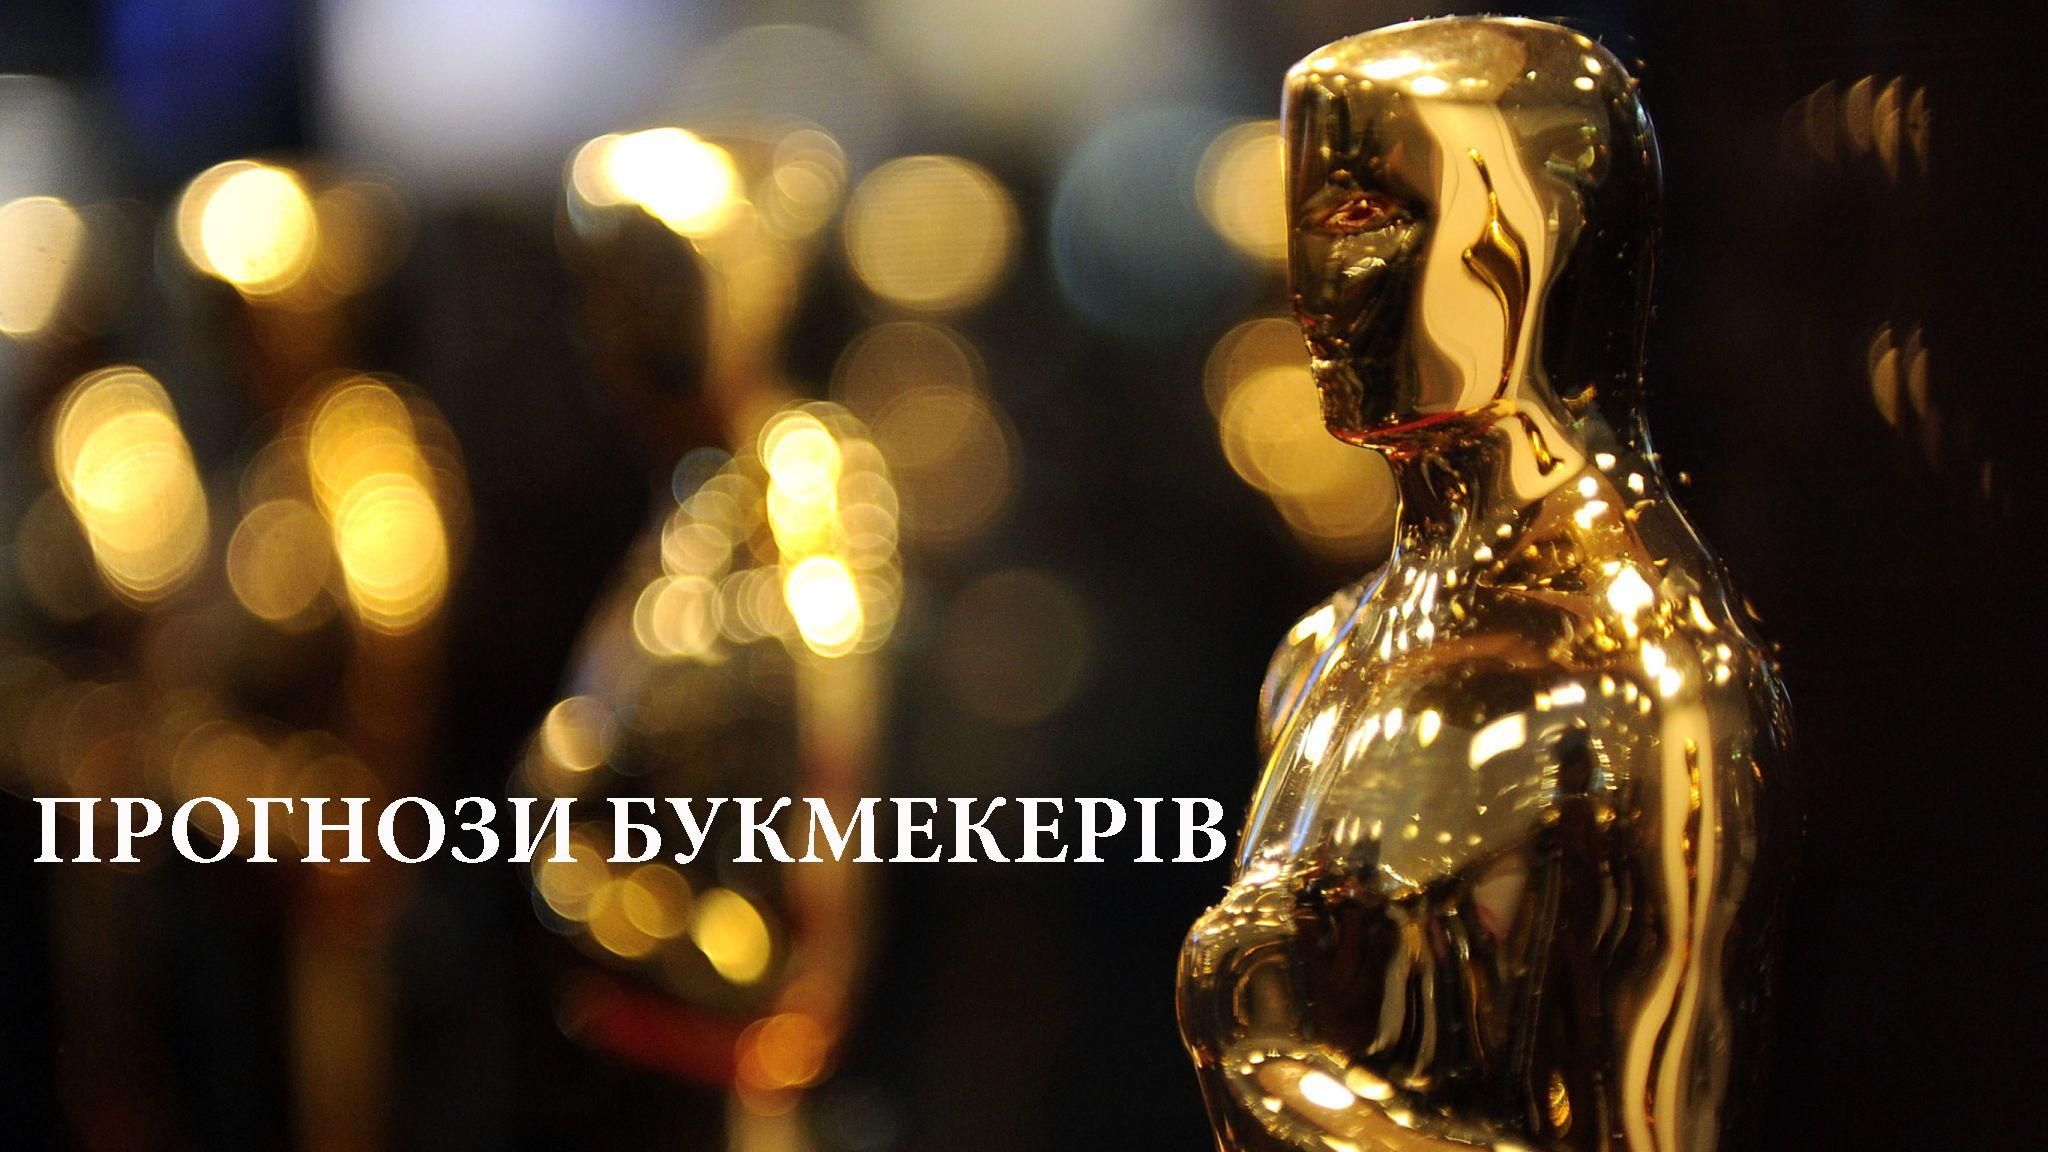 Оскар 2020: прогнозы букмекеров на победителей